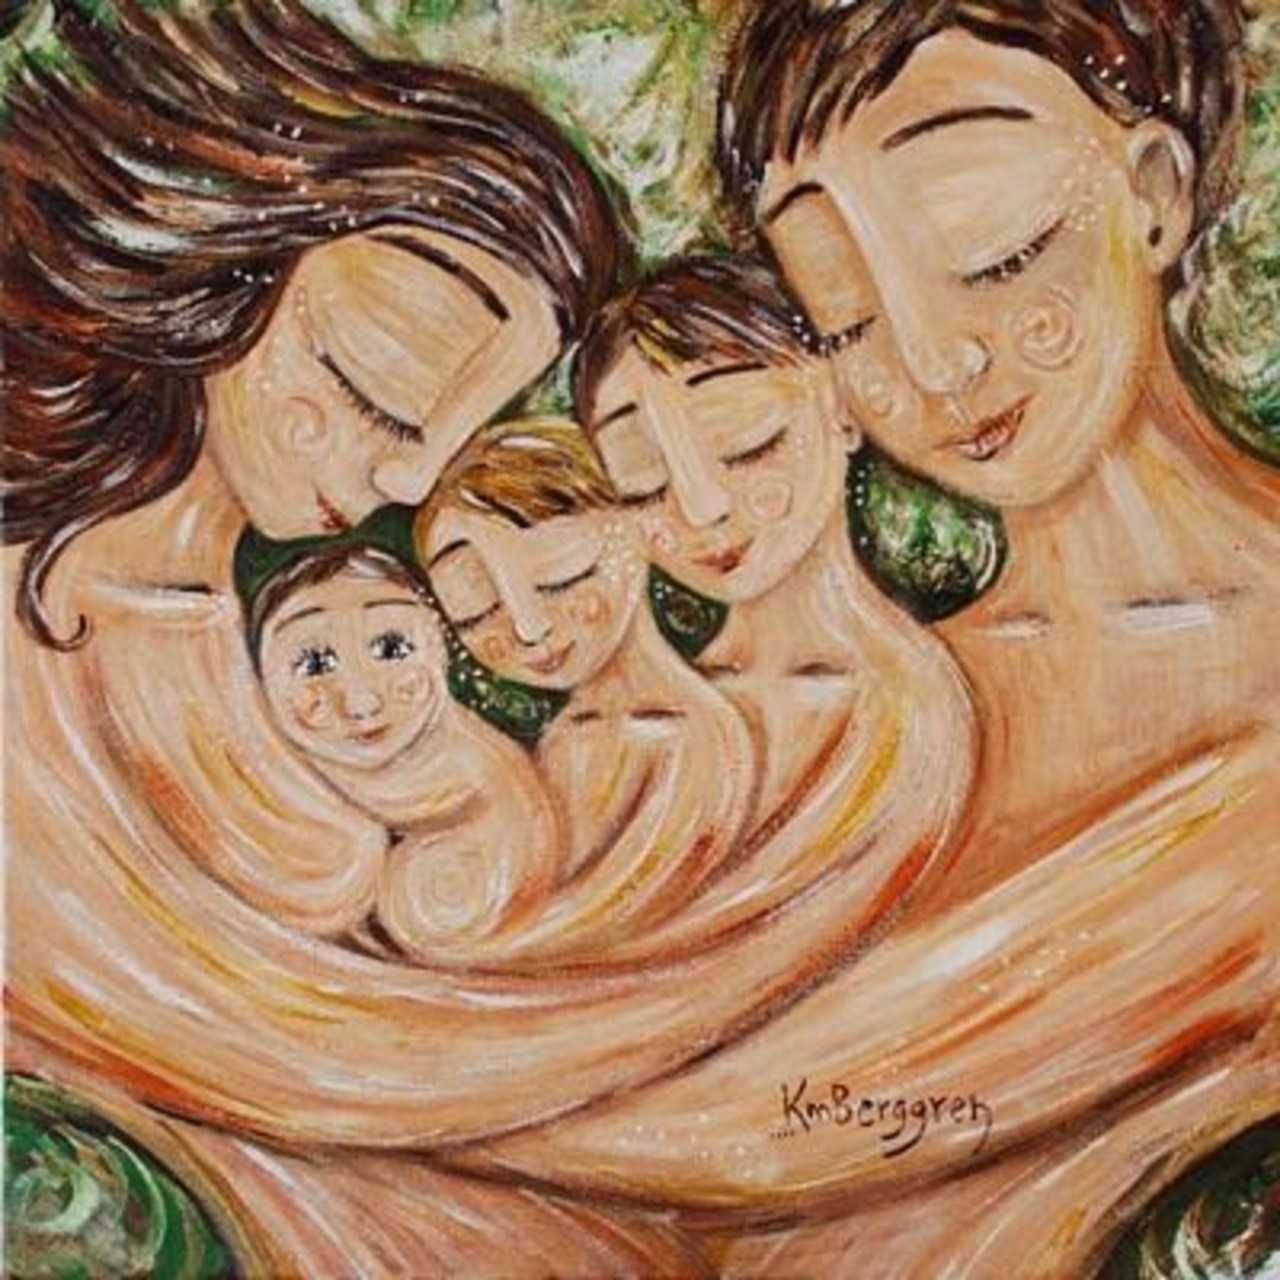 Она мама двоих детей. Кэти Берггрен картины семья. Художник Кэти Берггрен счастливая семья. Кэти Берггрен трое детей. Кэти Берггрен картины семья трое детей.